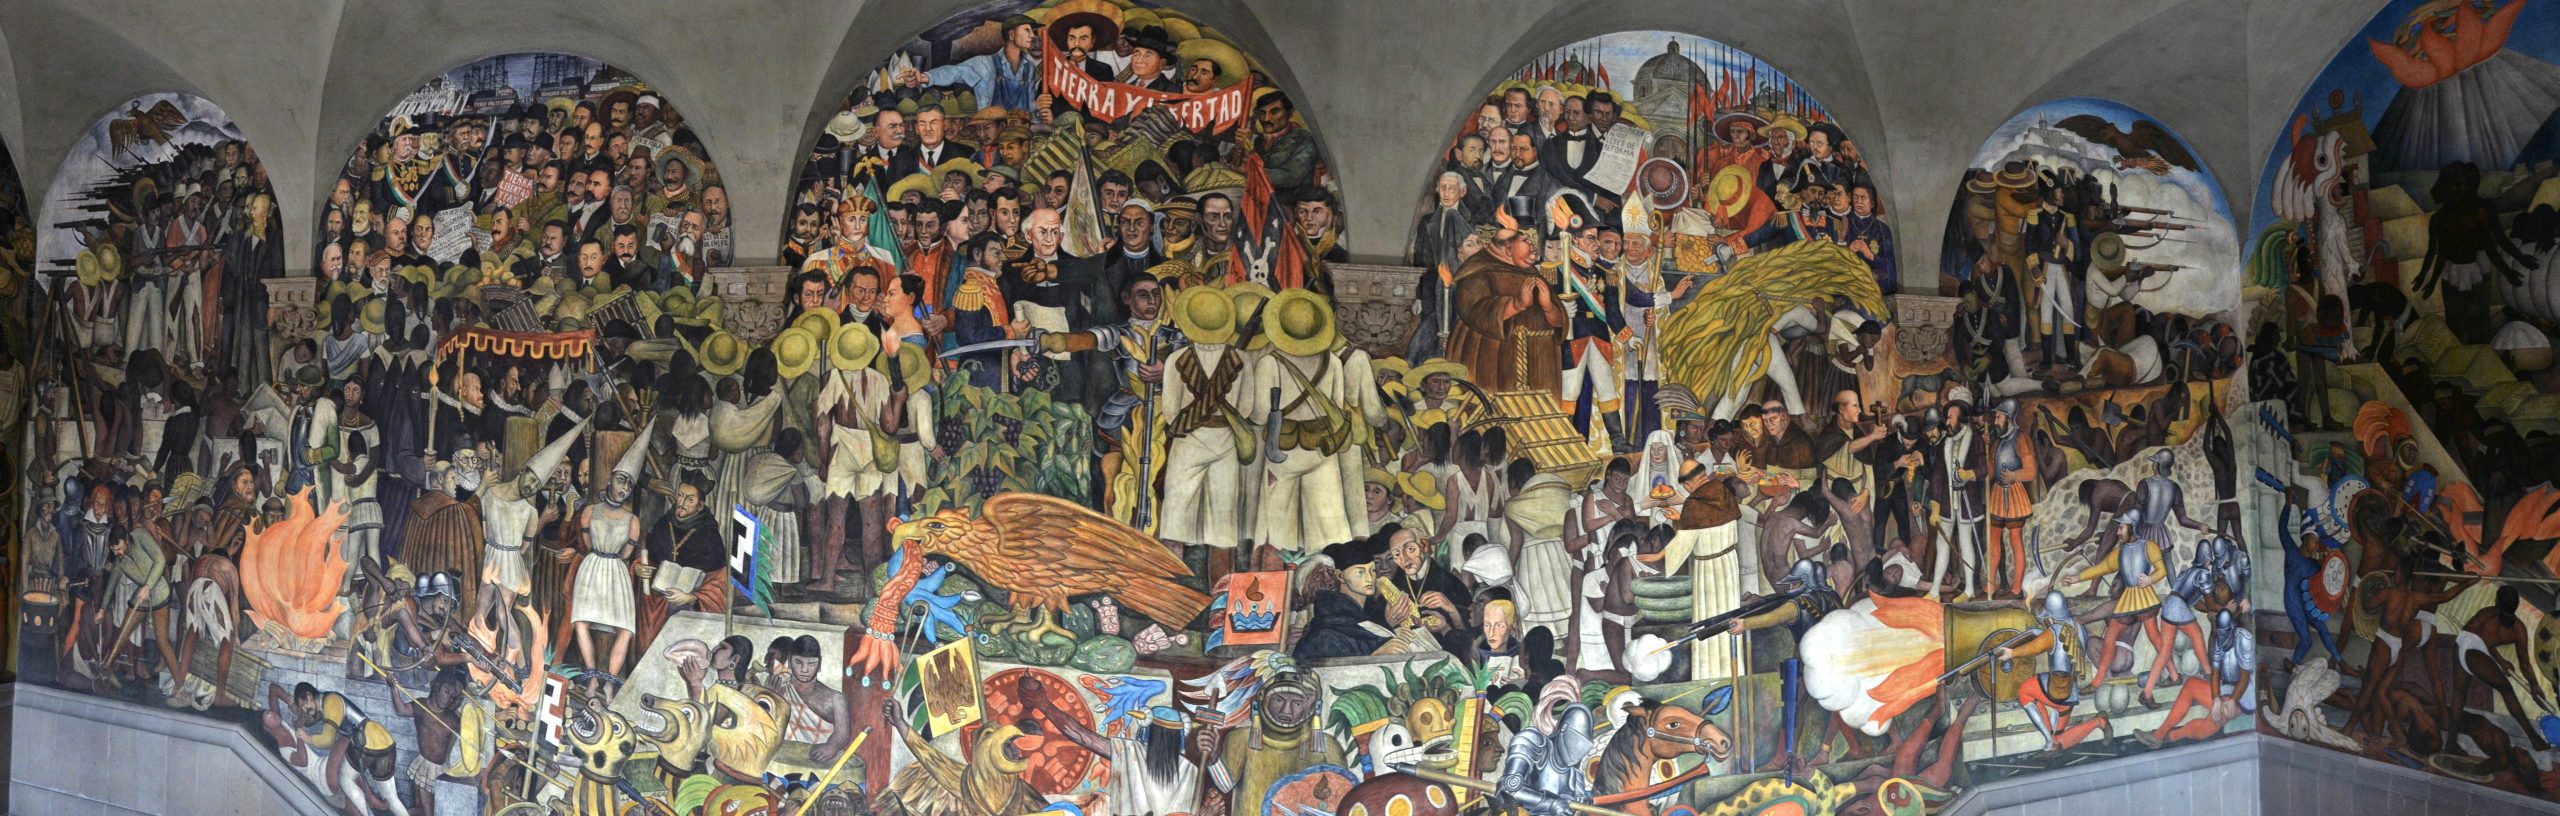 Diego Rivera, The History of Mexico, fresco, 1929-30 (Palacio Nacional, Mexico City). Photo: Milan Tvrdy, CC BY-NC 2.0.